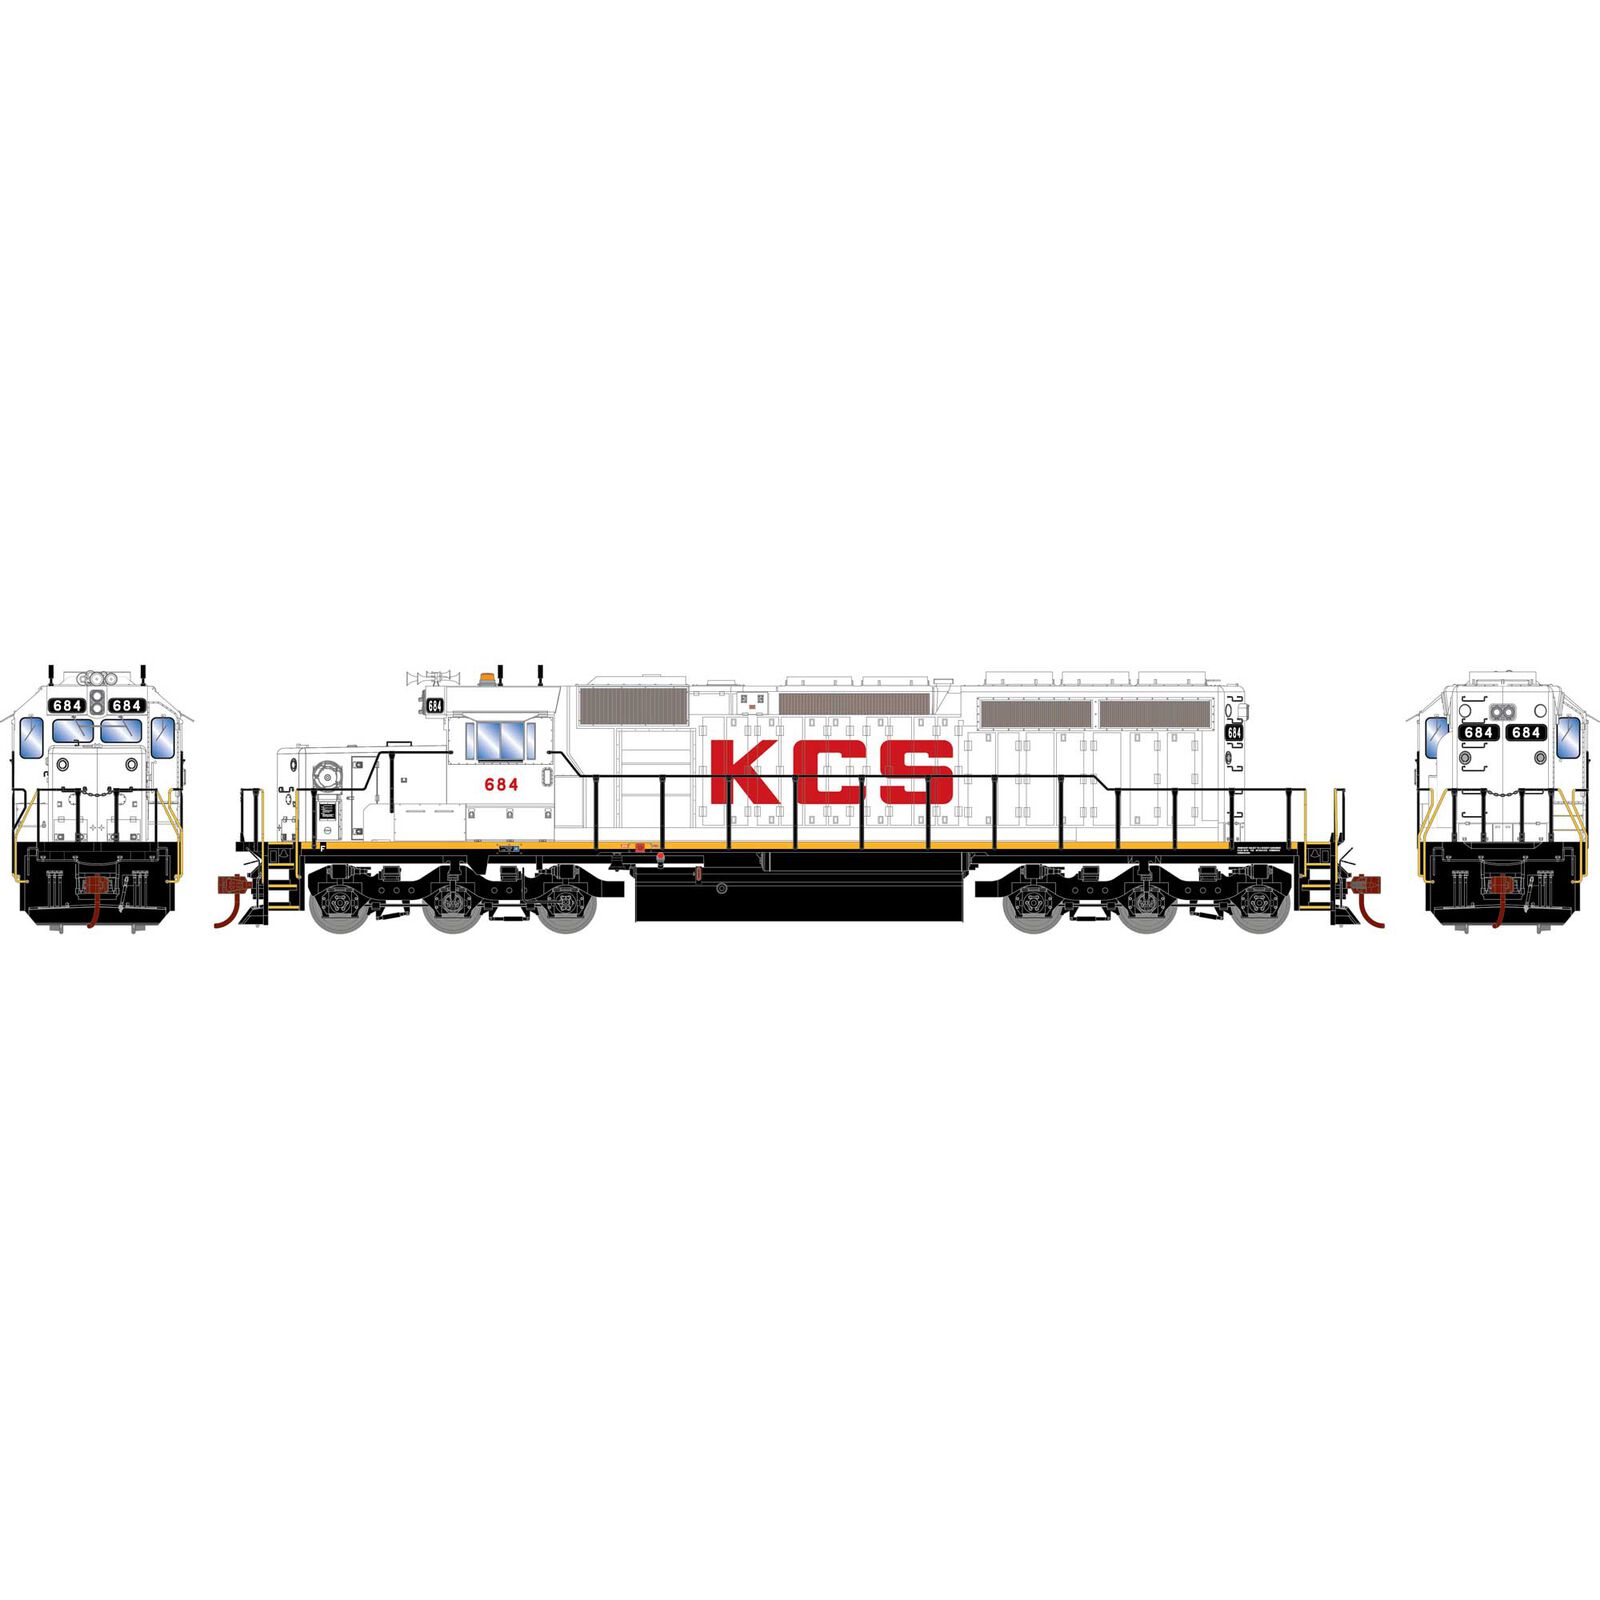 HO EMD SD40-2 Locomotive with DCC & Sound, KCS #684